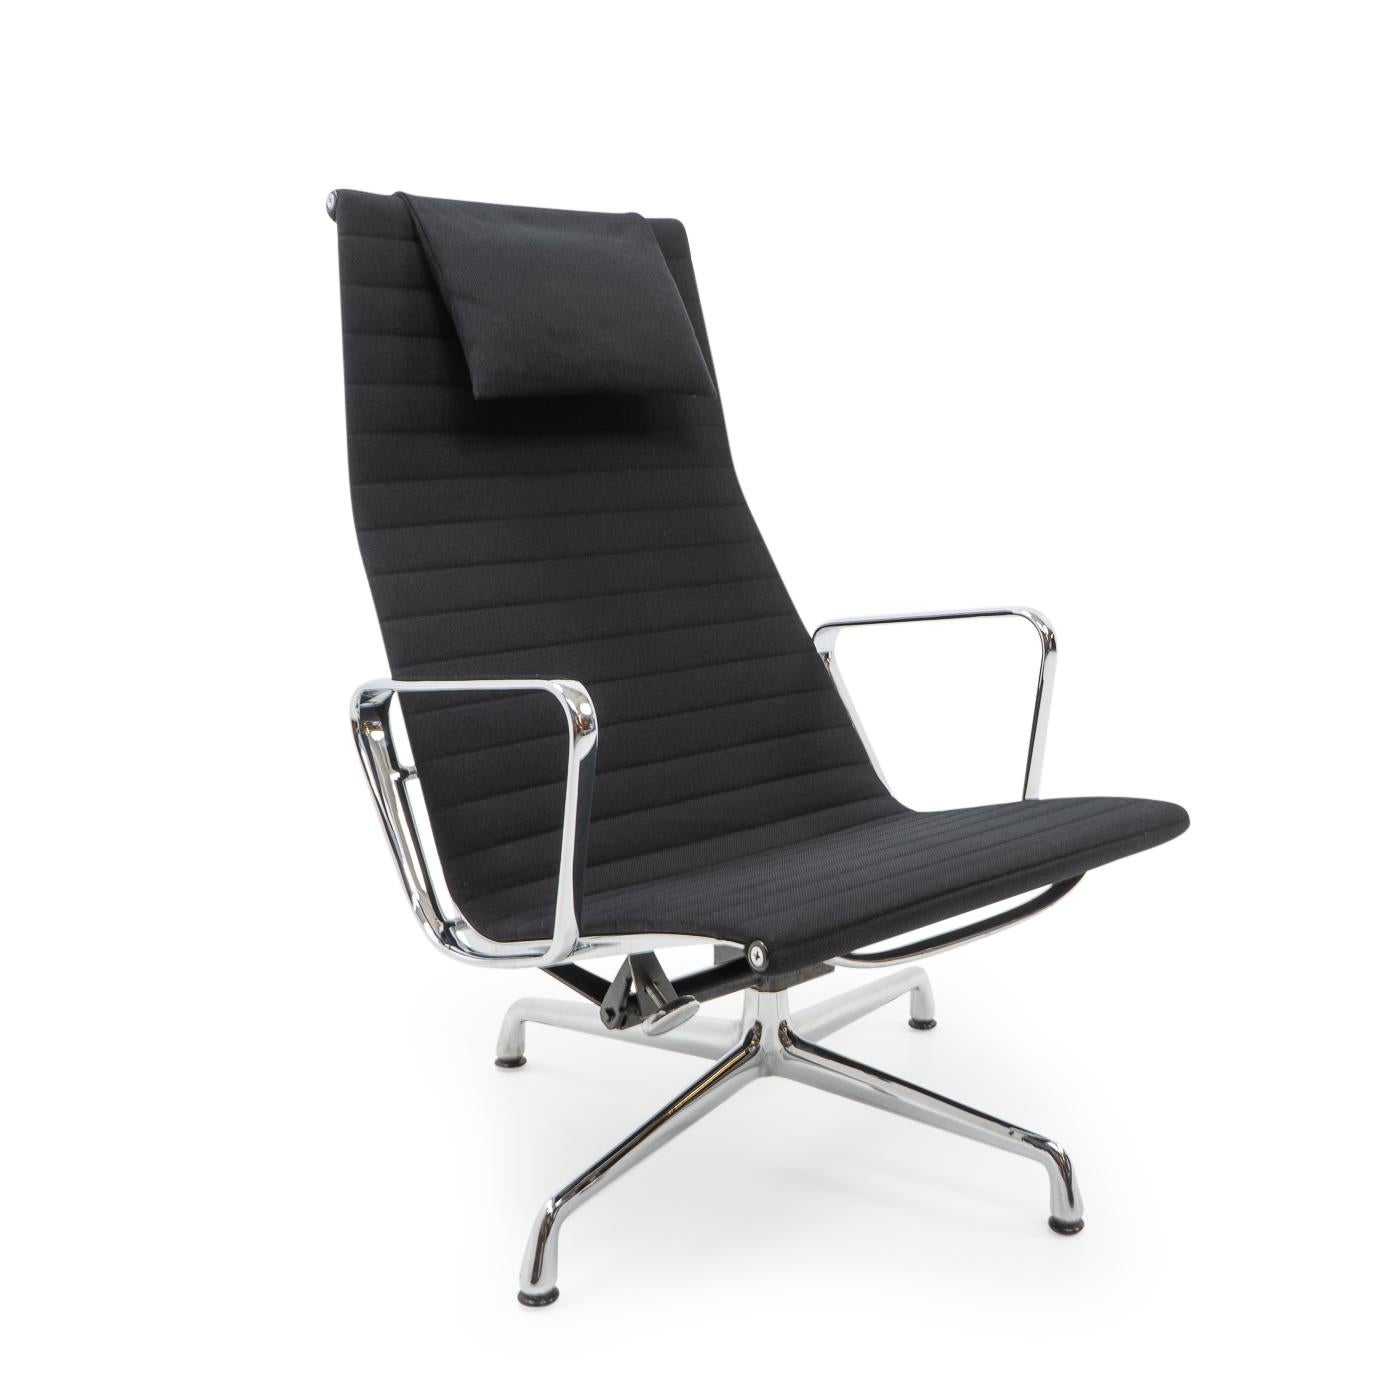 Die Stühle der Aluminum Group von Charles & Ray Eames gehören zu den wichtigsten Entwürfen des 20. Jahrhunderts. Ihr ursprüngliches Design aus den 1950er Jahren ist auch heute noch aktuell und verleiht Innenräumen auf der ganzen Welt einen Hauch von